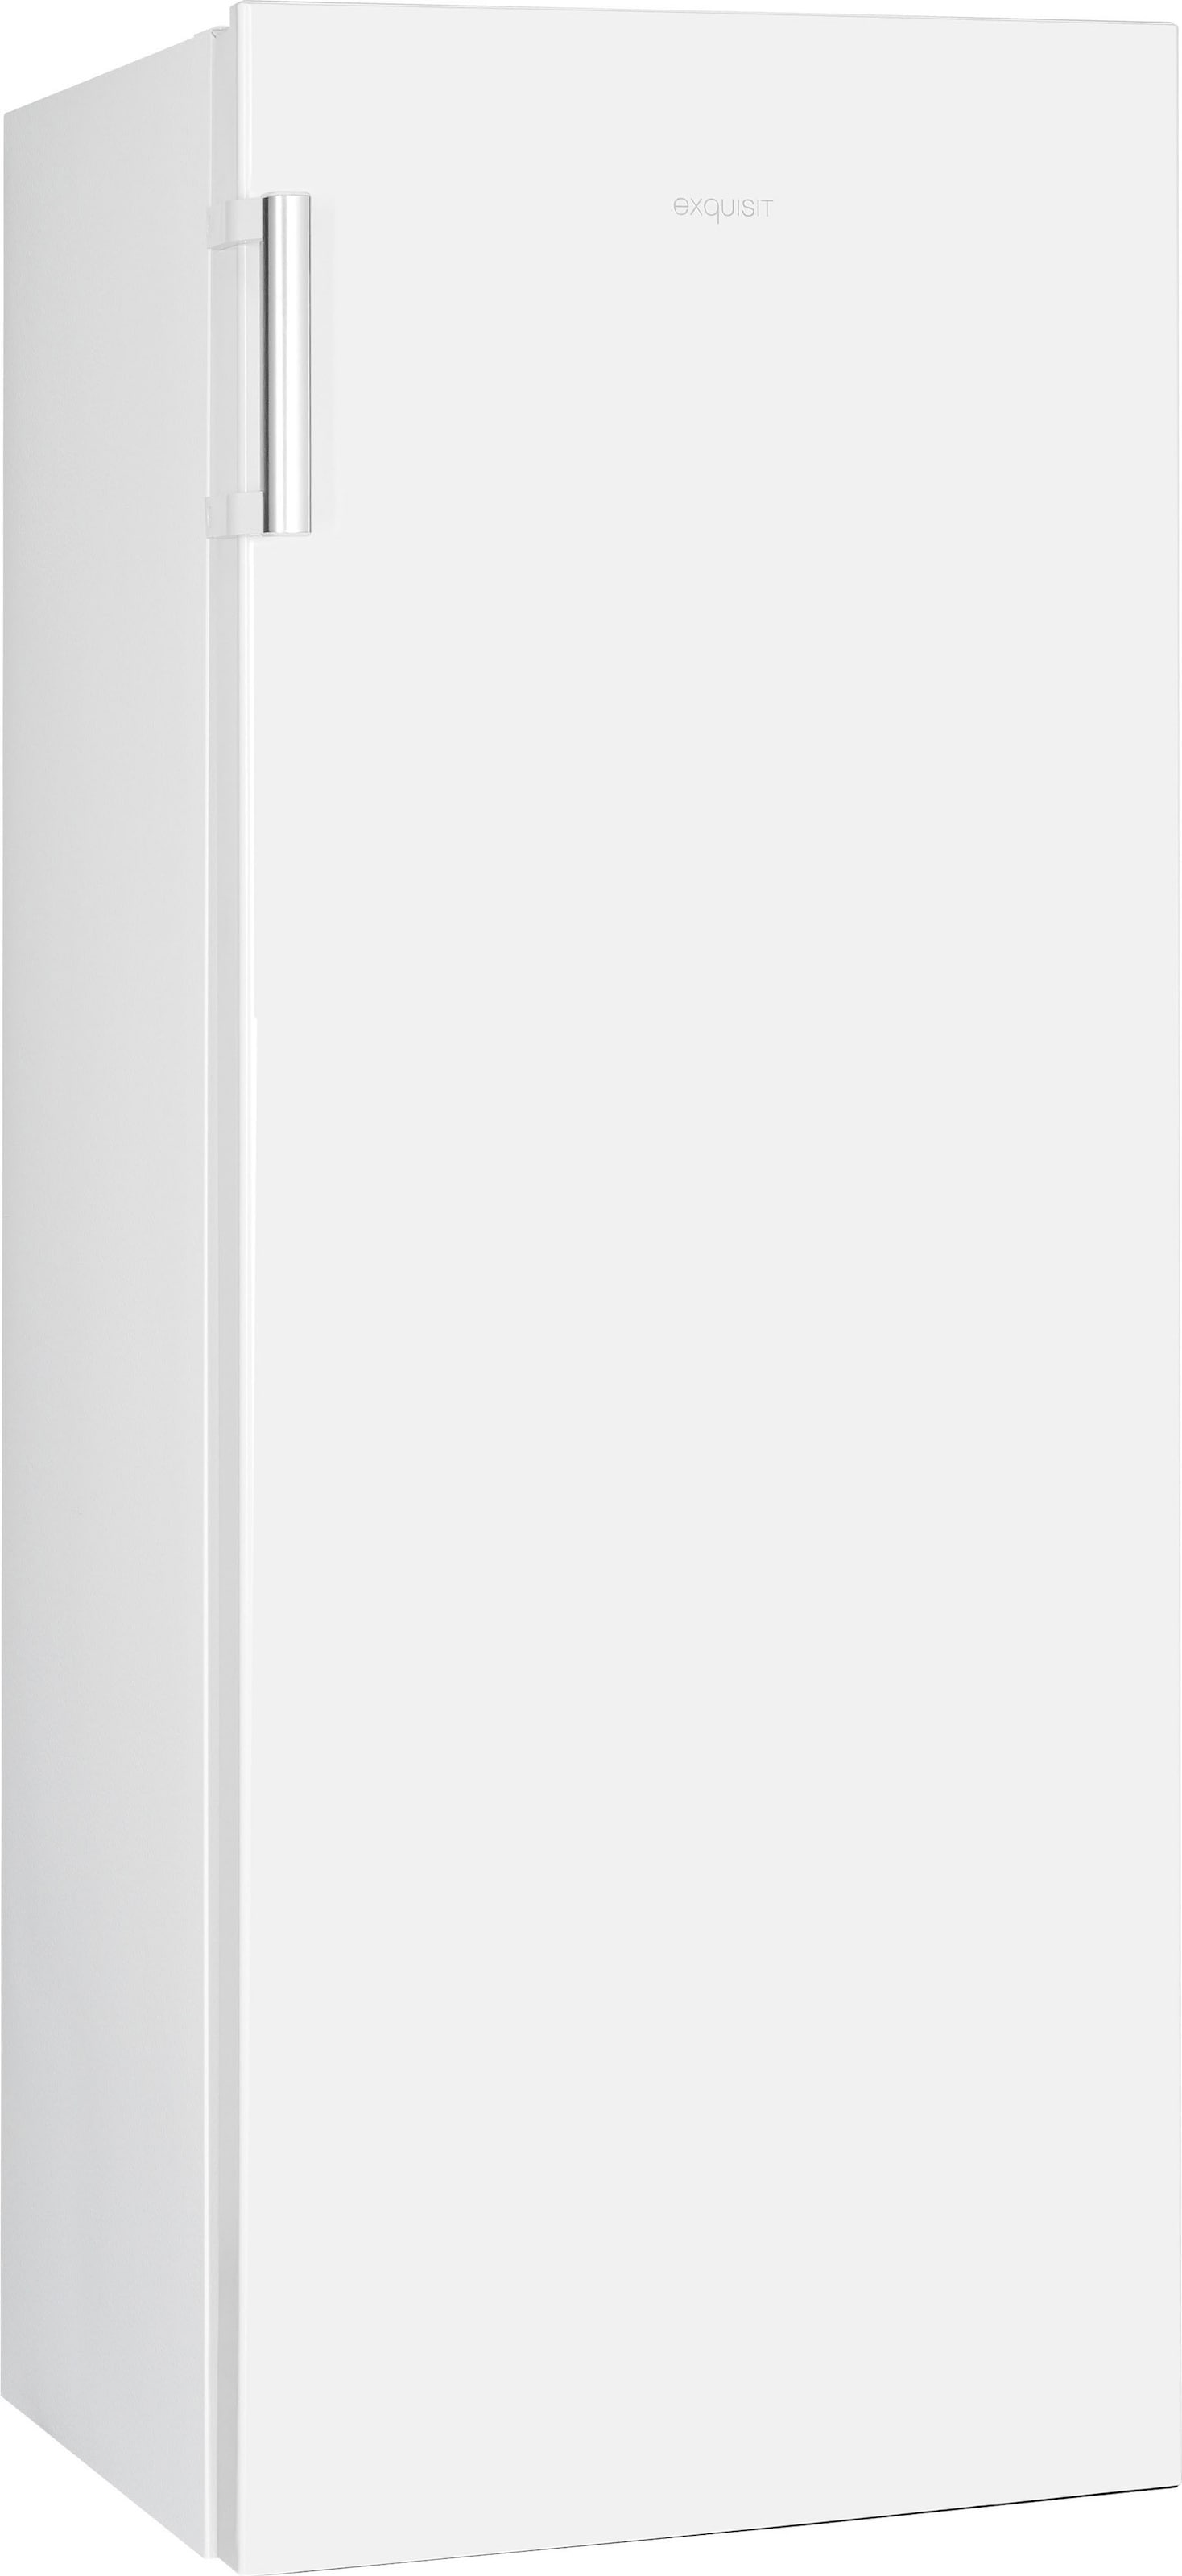 exquisit Vollraumkühlschrank »KS320-V-H-010E«, KS320-V-H-010E, 143,4 cm hoch, 55 cm breit, 242 L Volumen